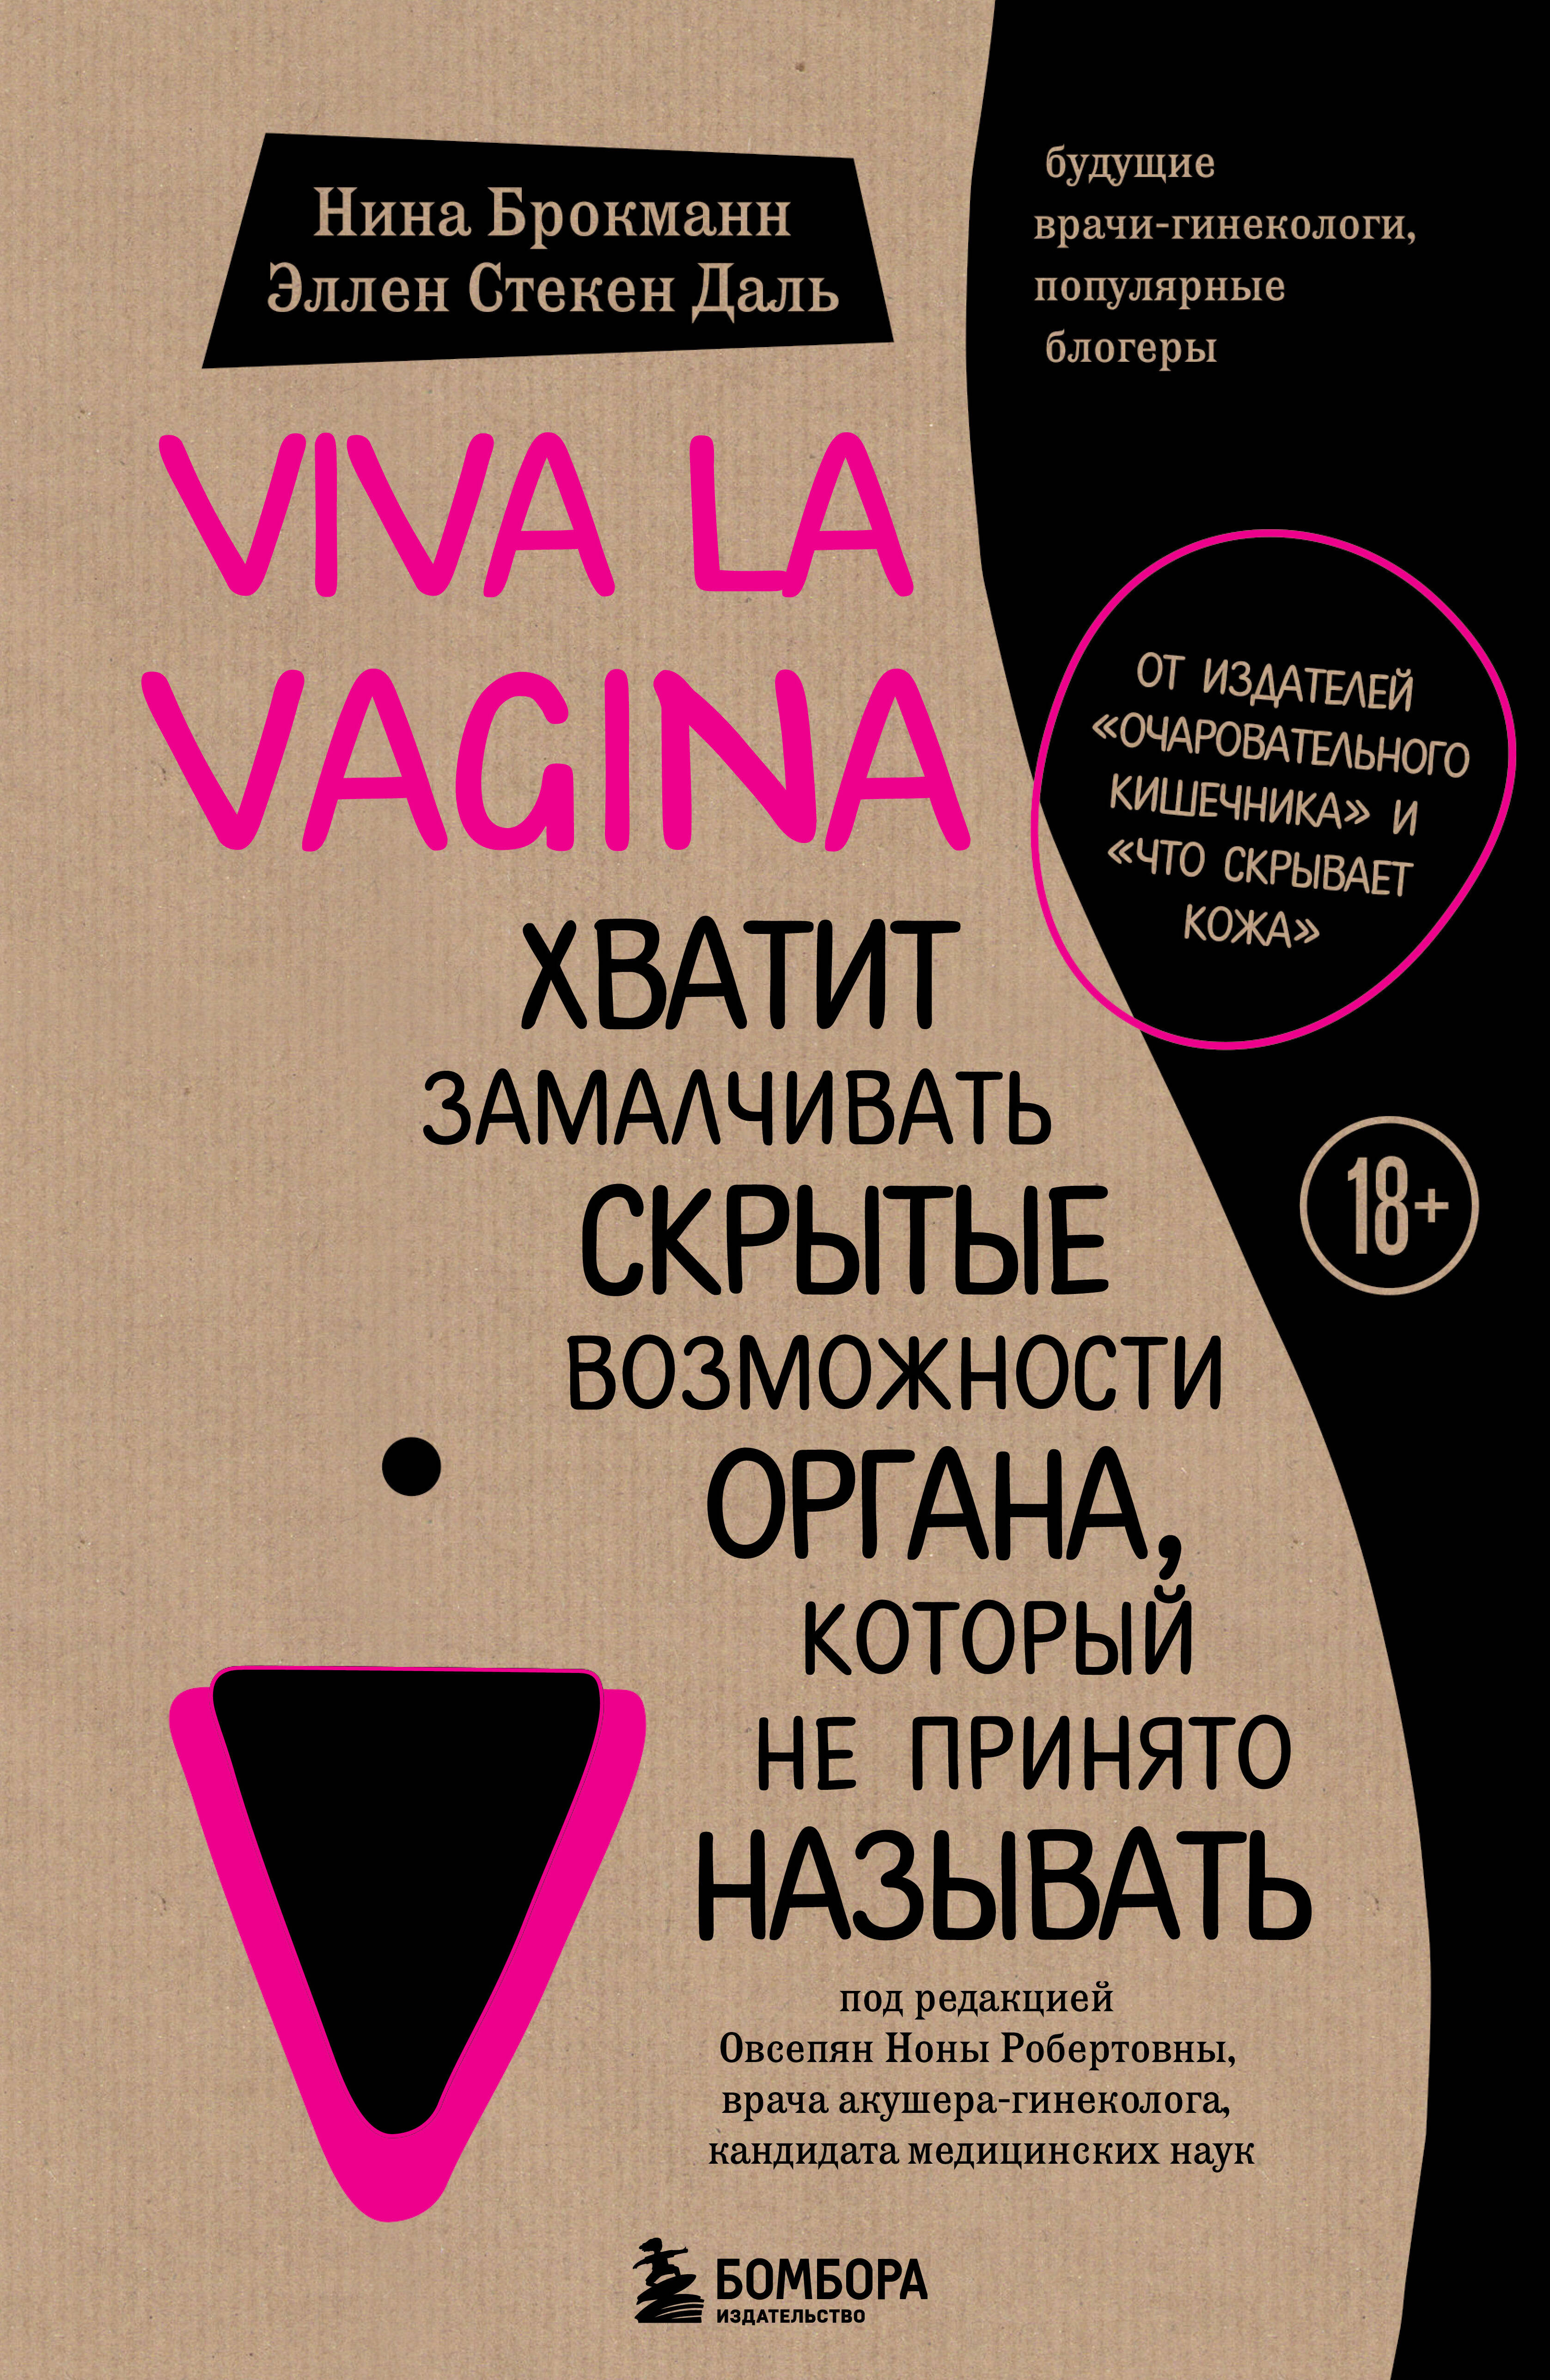 viva la vagina хватит замалчивать скрытые возможности органа который не принято называть брокманн н Брокманн Нина, Стекен Даль Эллен Viva la vagina. Хватит замалчивать скрытые возможности органа, который не принято называть